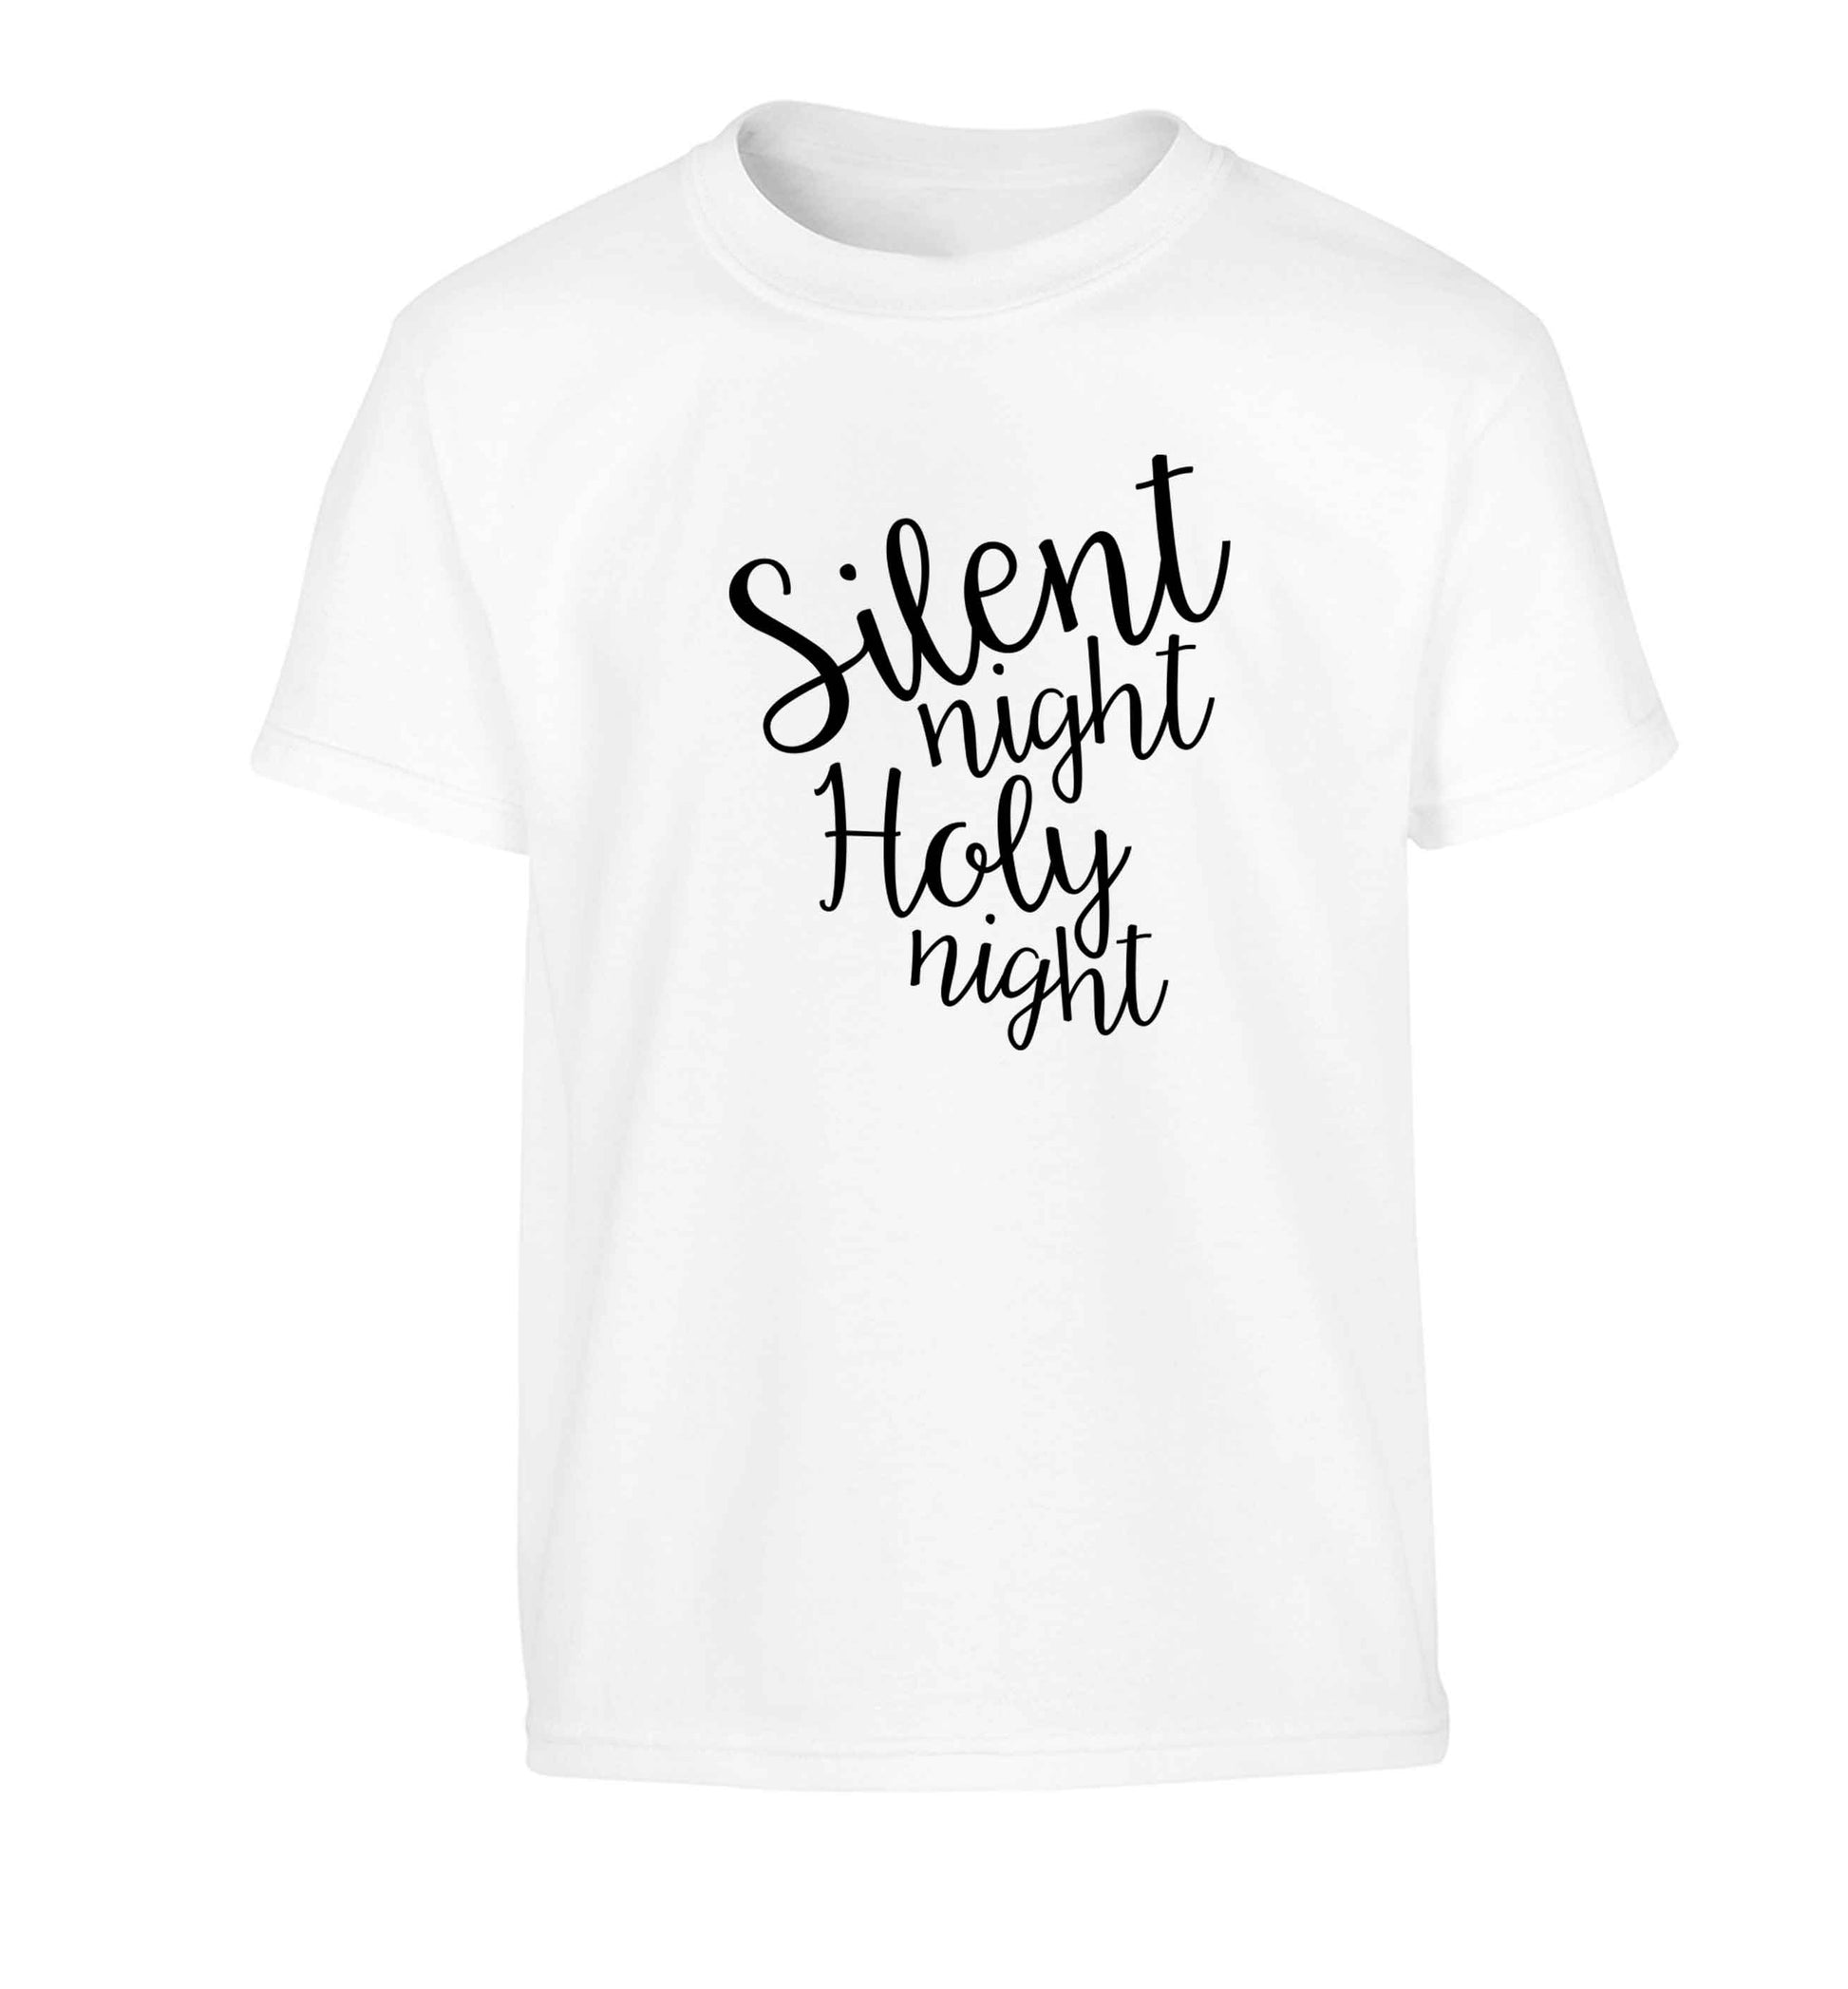 Silent night holy night Children's white Tshirt 12-13 Years